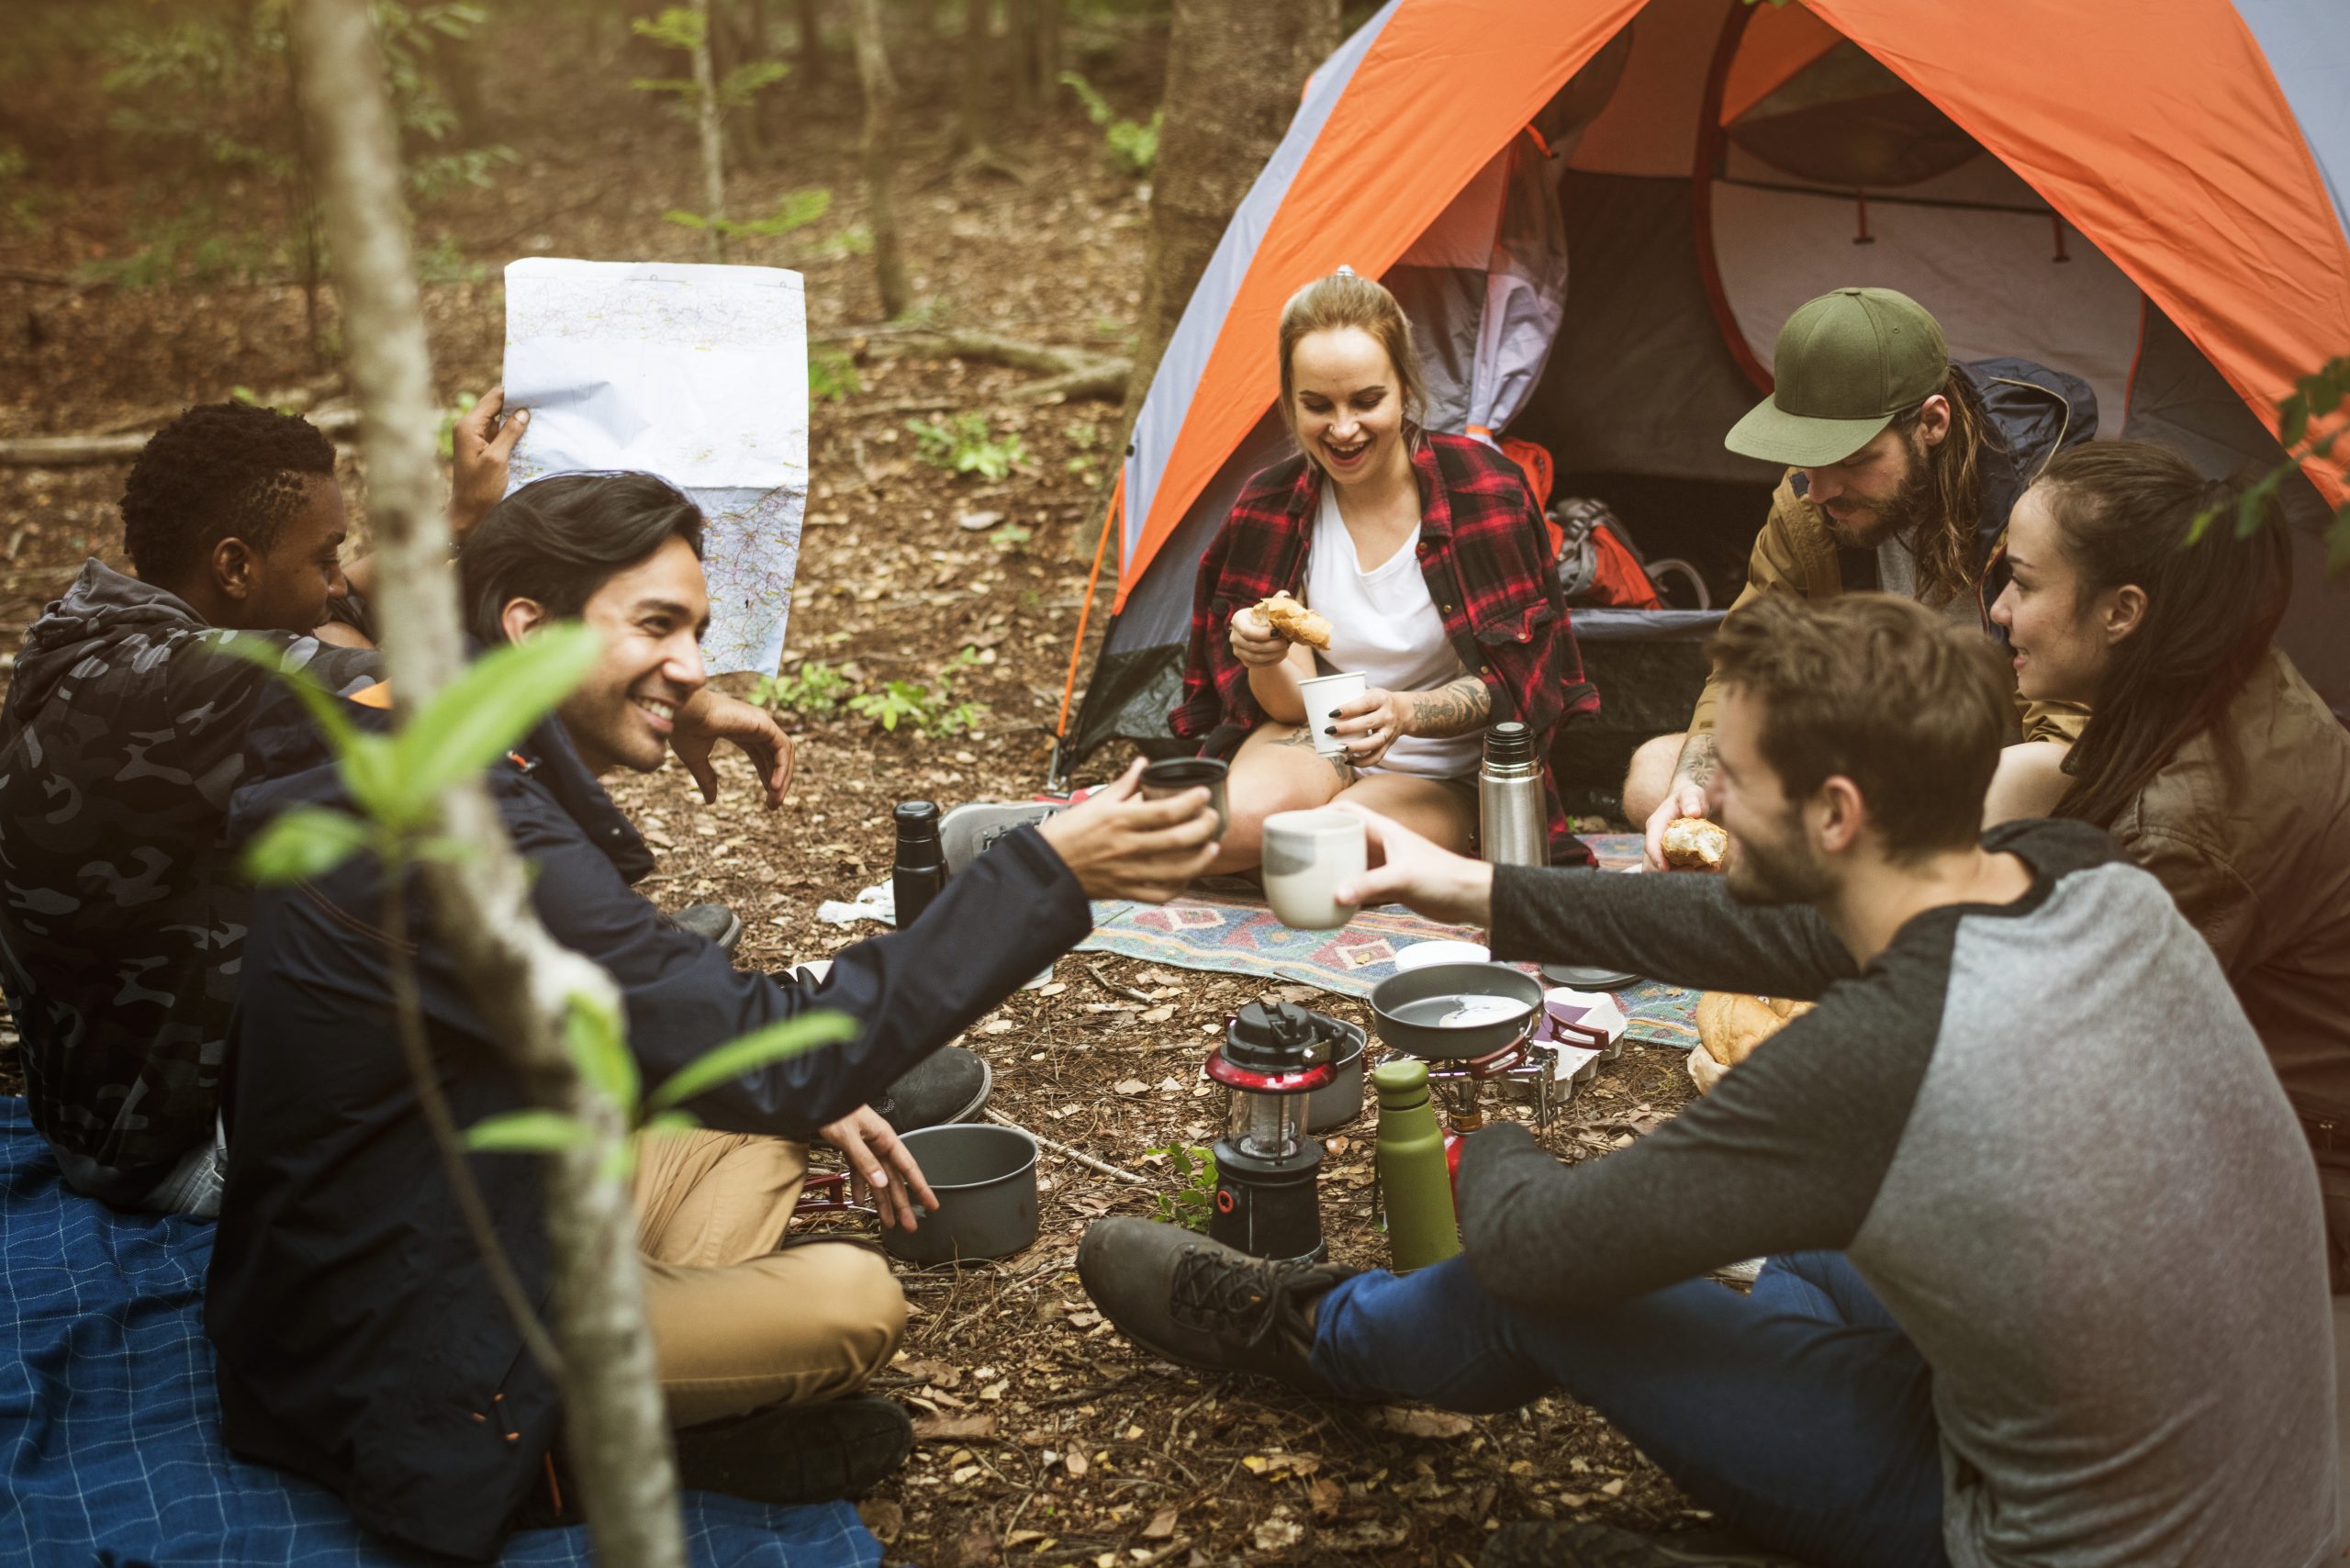 Развлечения в походе. Друзья в походе. Люди на пикнике в лесу. Пикник в лесу с друзьями. Туризм палатка люди.